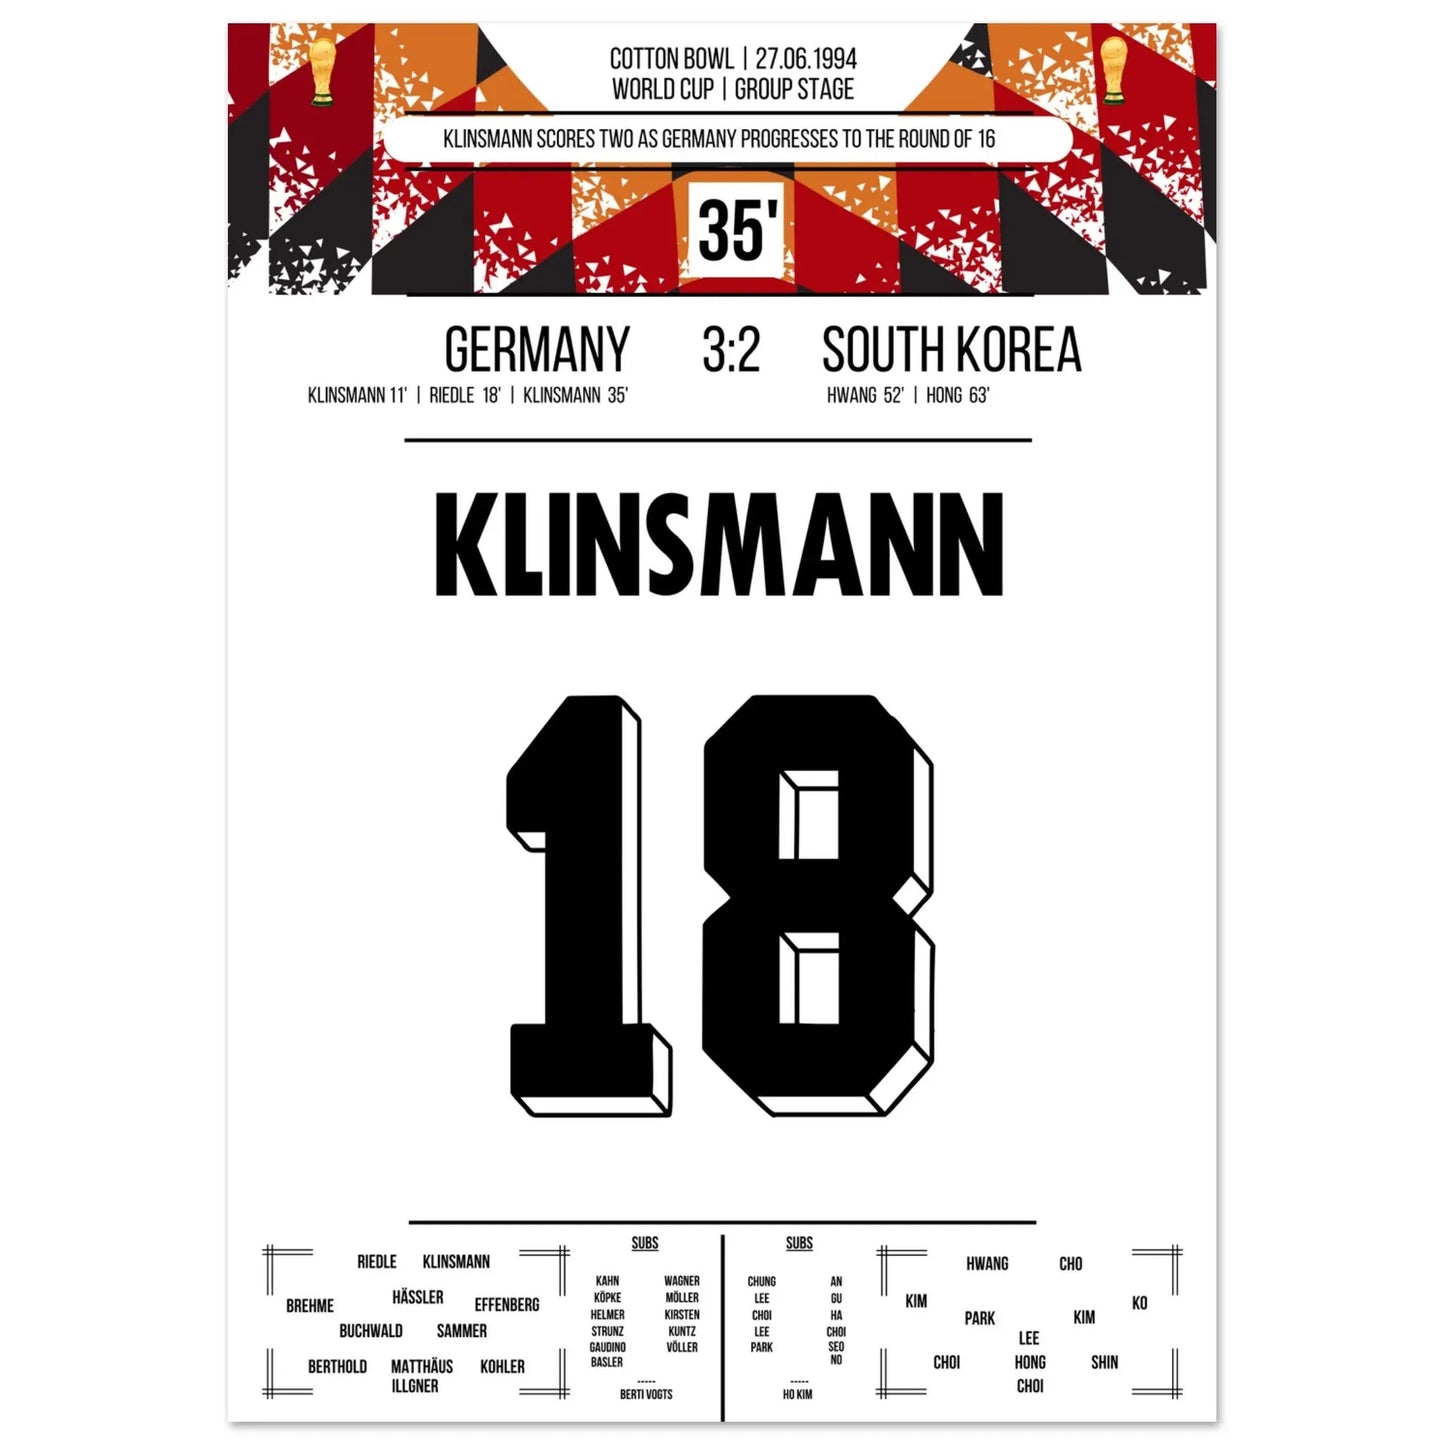 Klinsmann marque un doublé pour envoyer l'Allemagne en huitièmes de finale de la Coupe du monde 1994